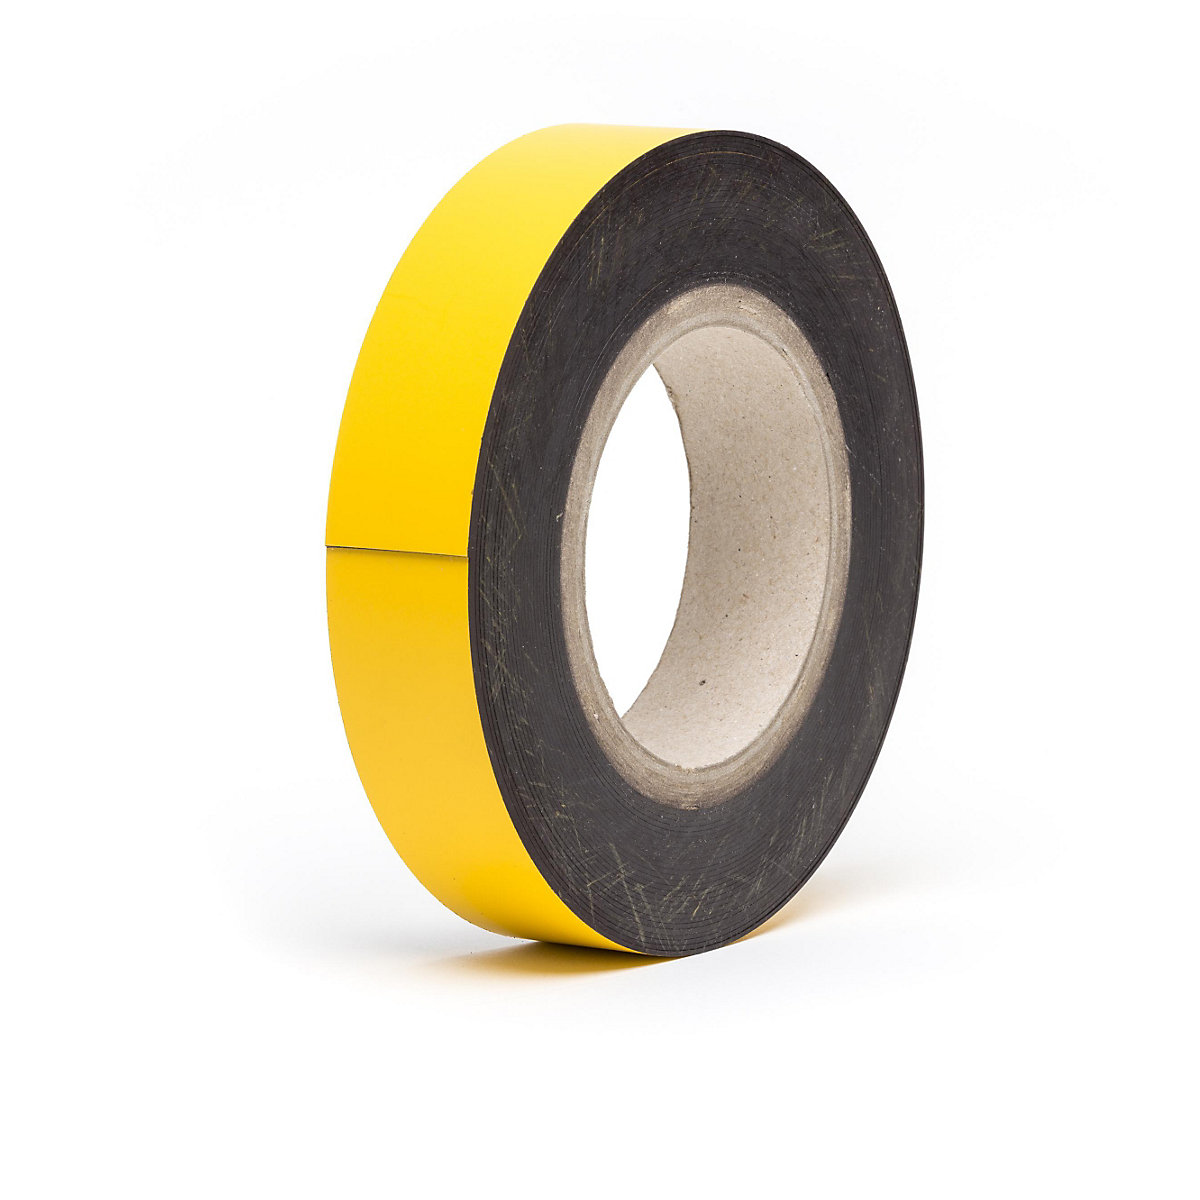 Magnetne skladišne pločice, u roli, u žutoj boji, visina 25 mm, dužina role 10 m-14